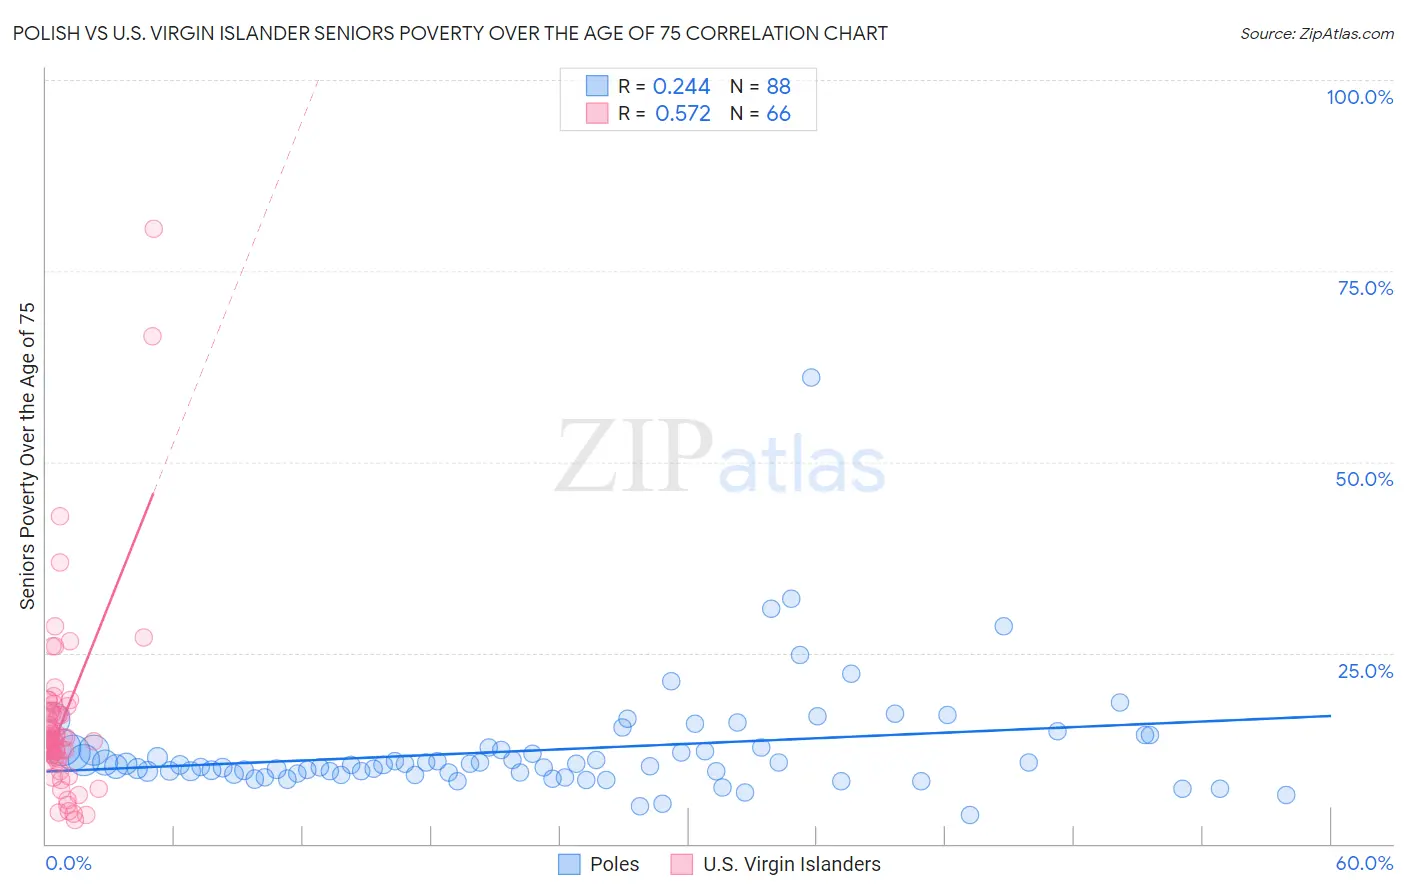 Polish vs U.S. Virgin Islander Seniors Poverty Over the Age of 75